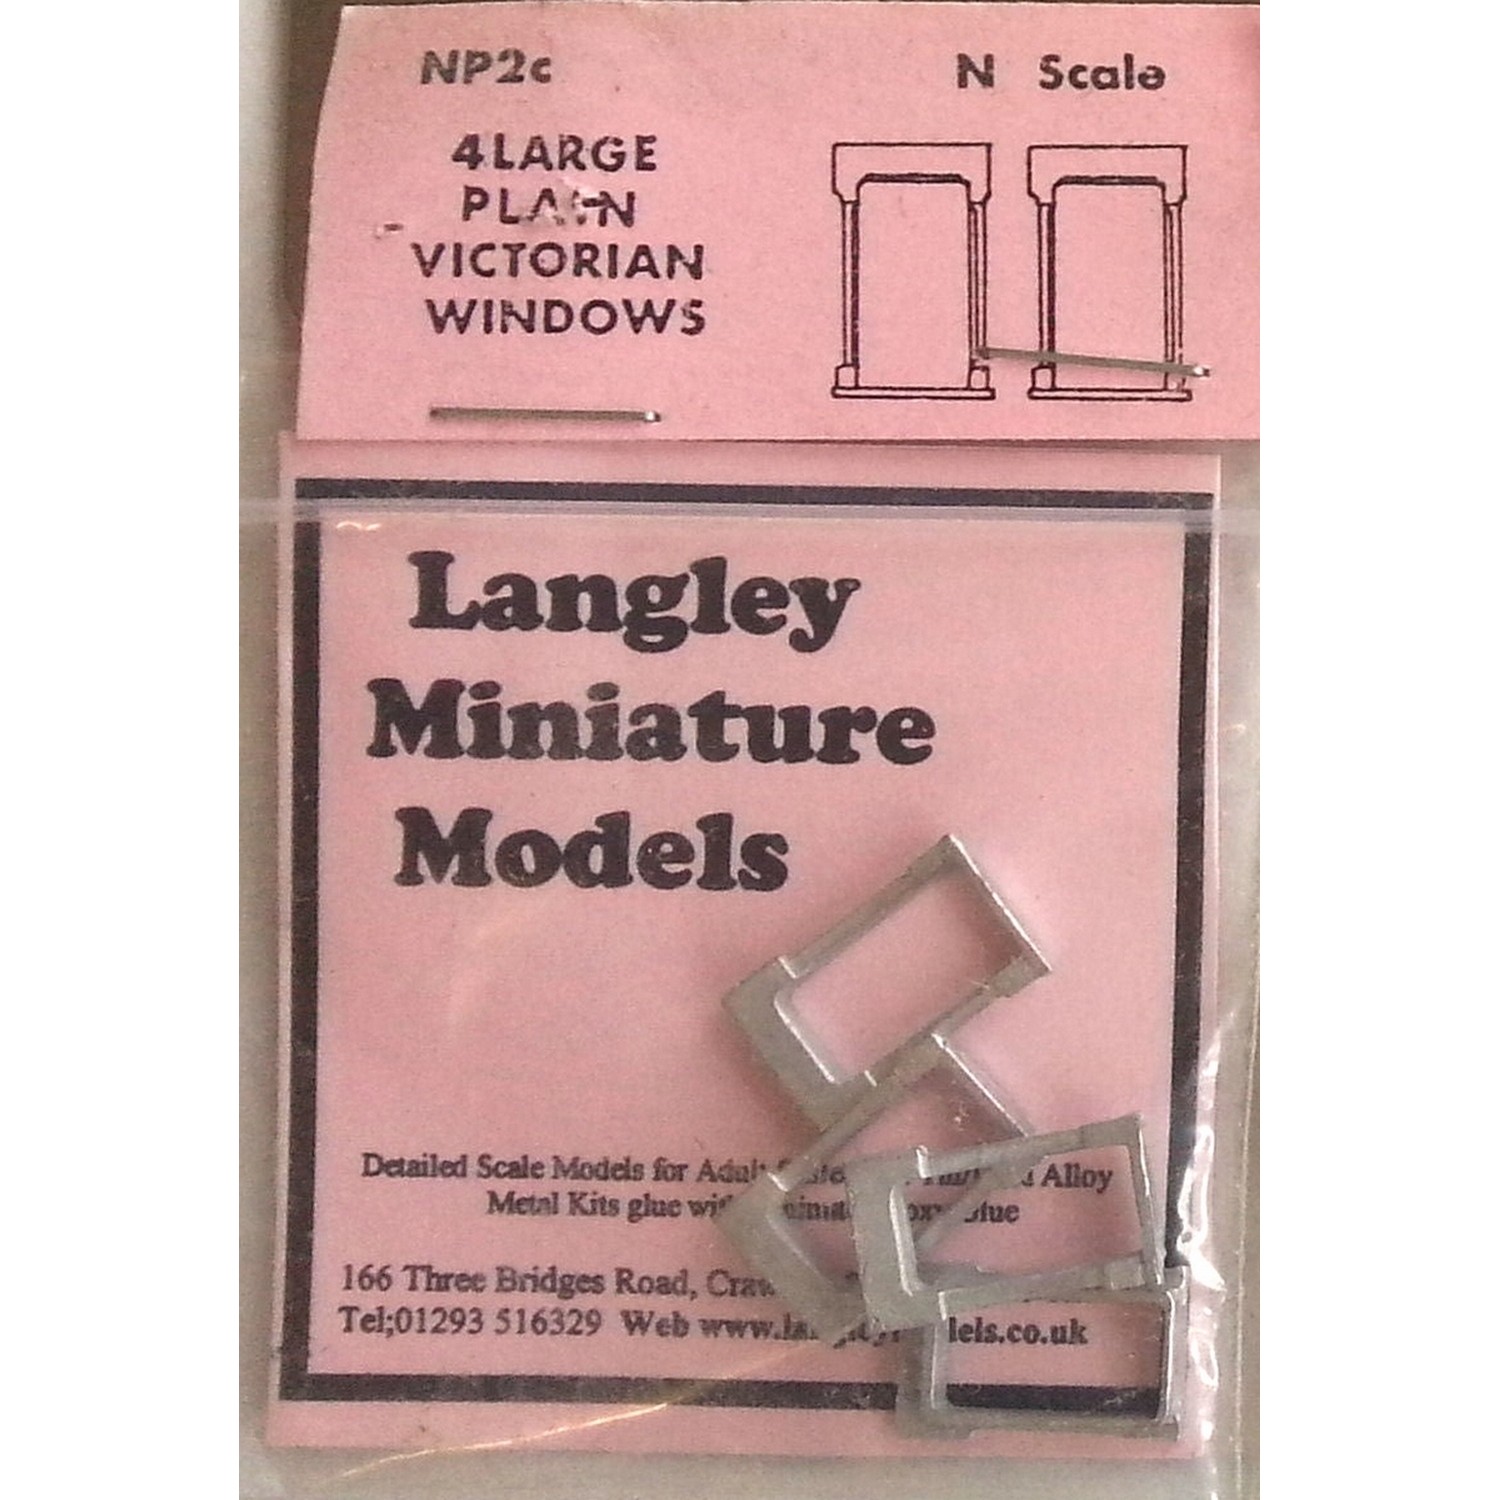 4 large plain Victorian Windows N Scale UNPAINTED Part NP2c Langley Models 